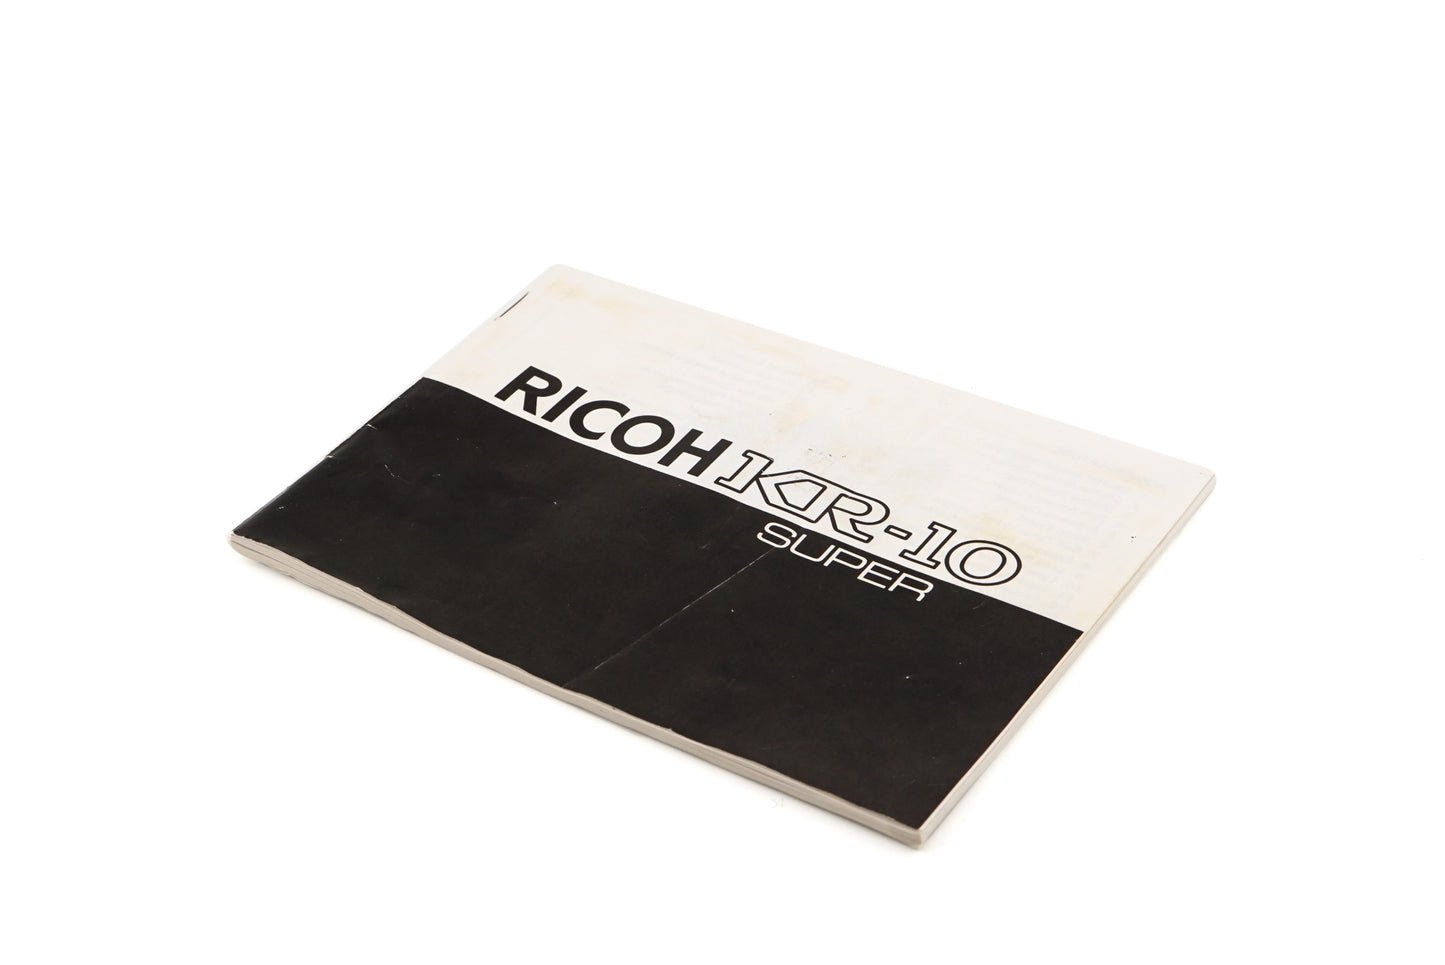 Ricoh KR-10 Super Instructions